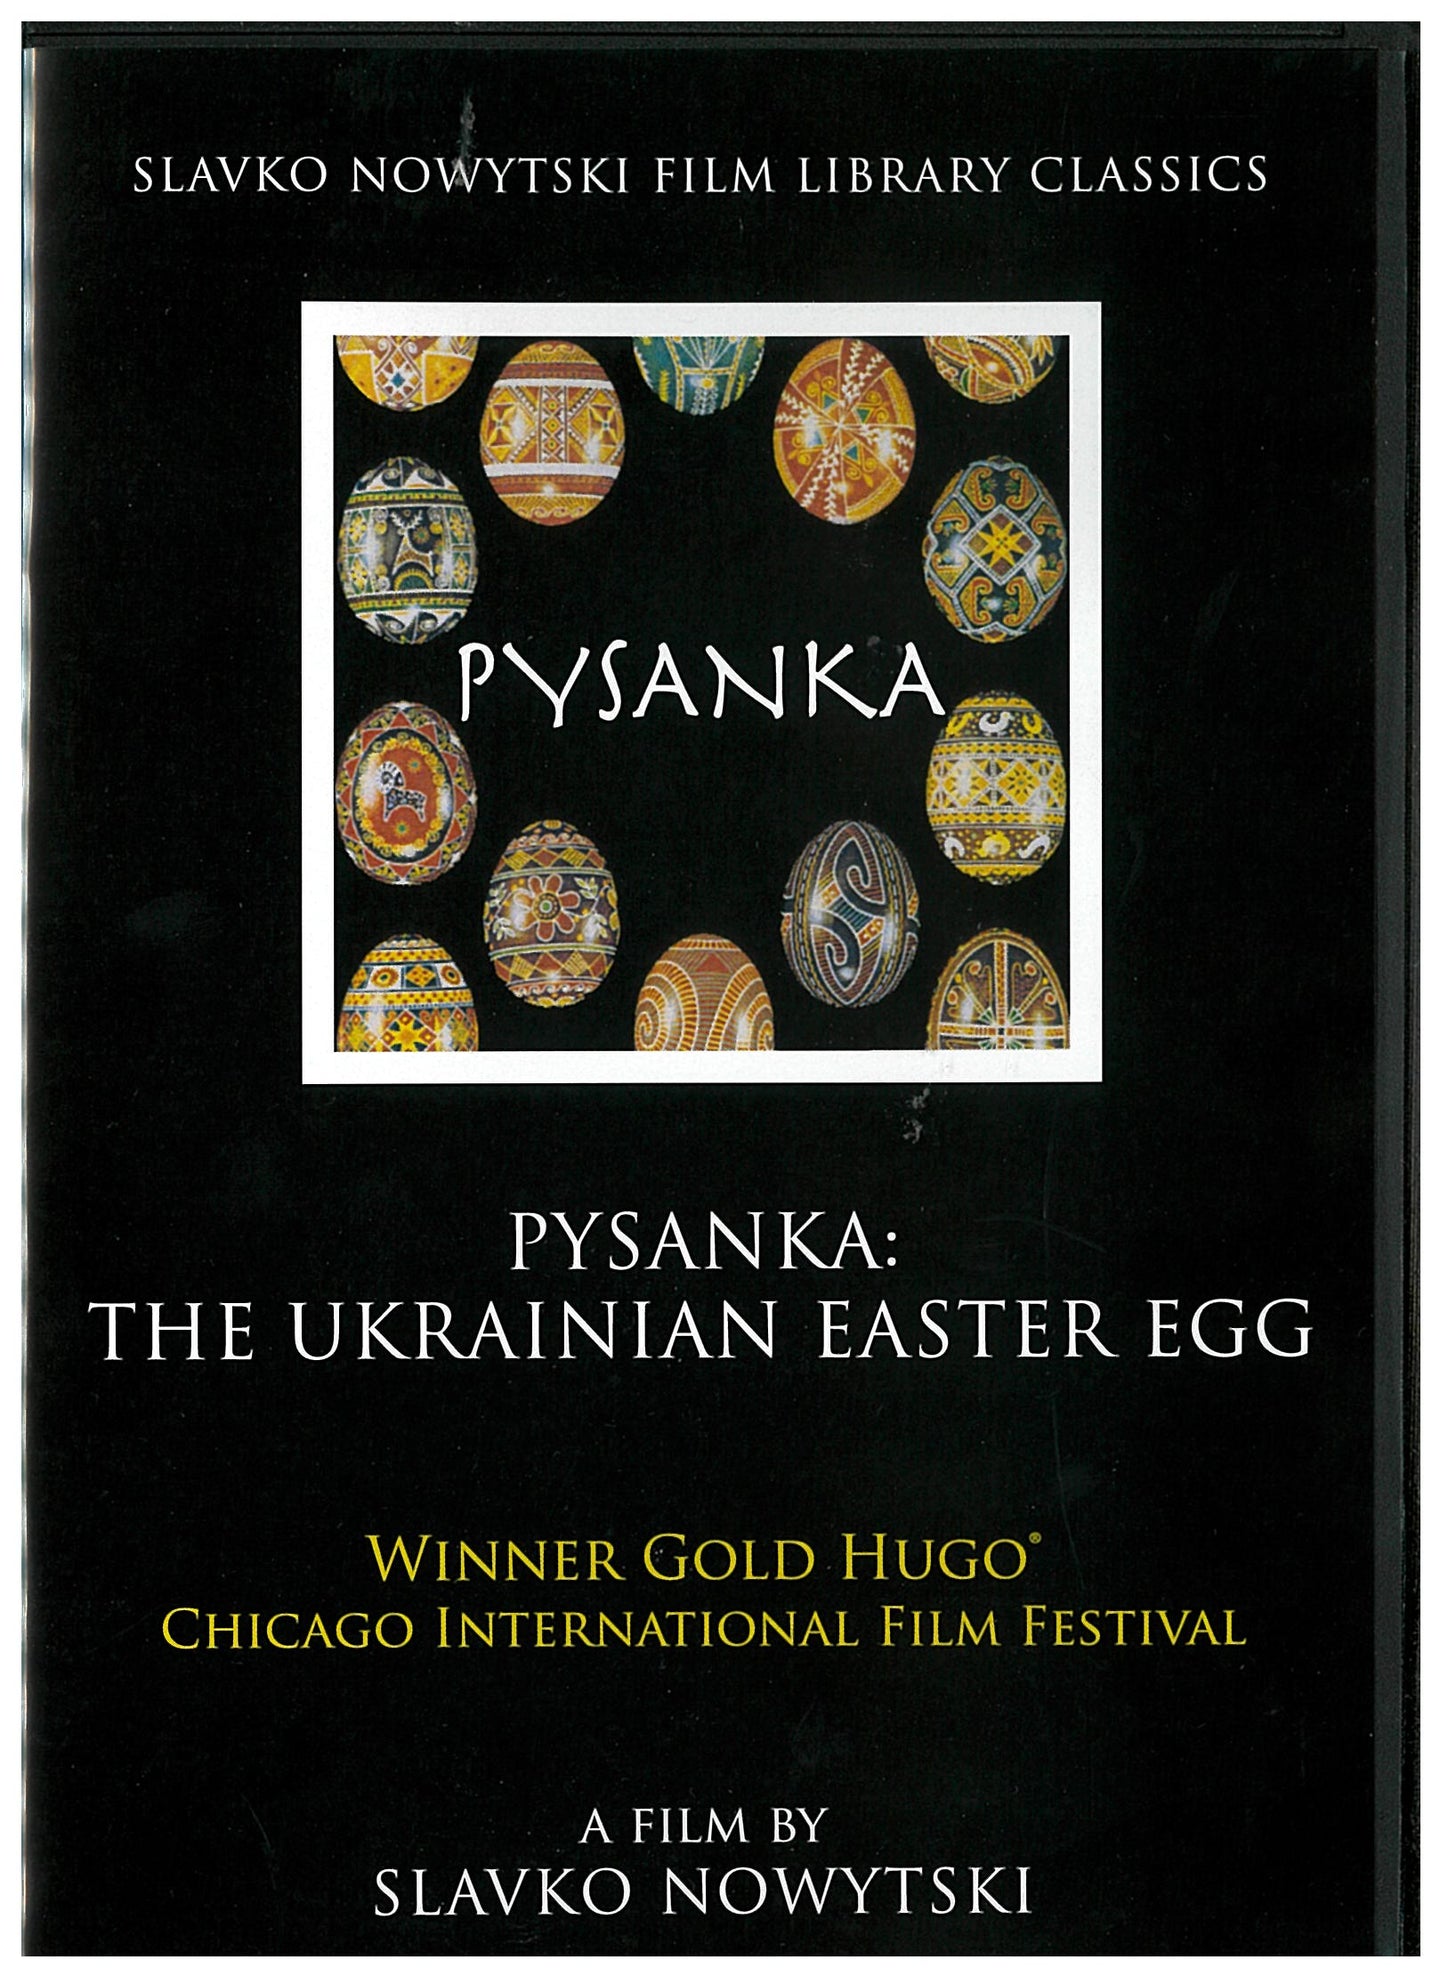 Pysanky - The Ukrainian Easter Egg DVD